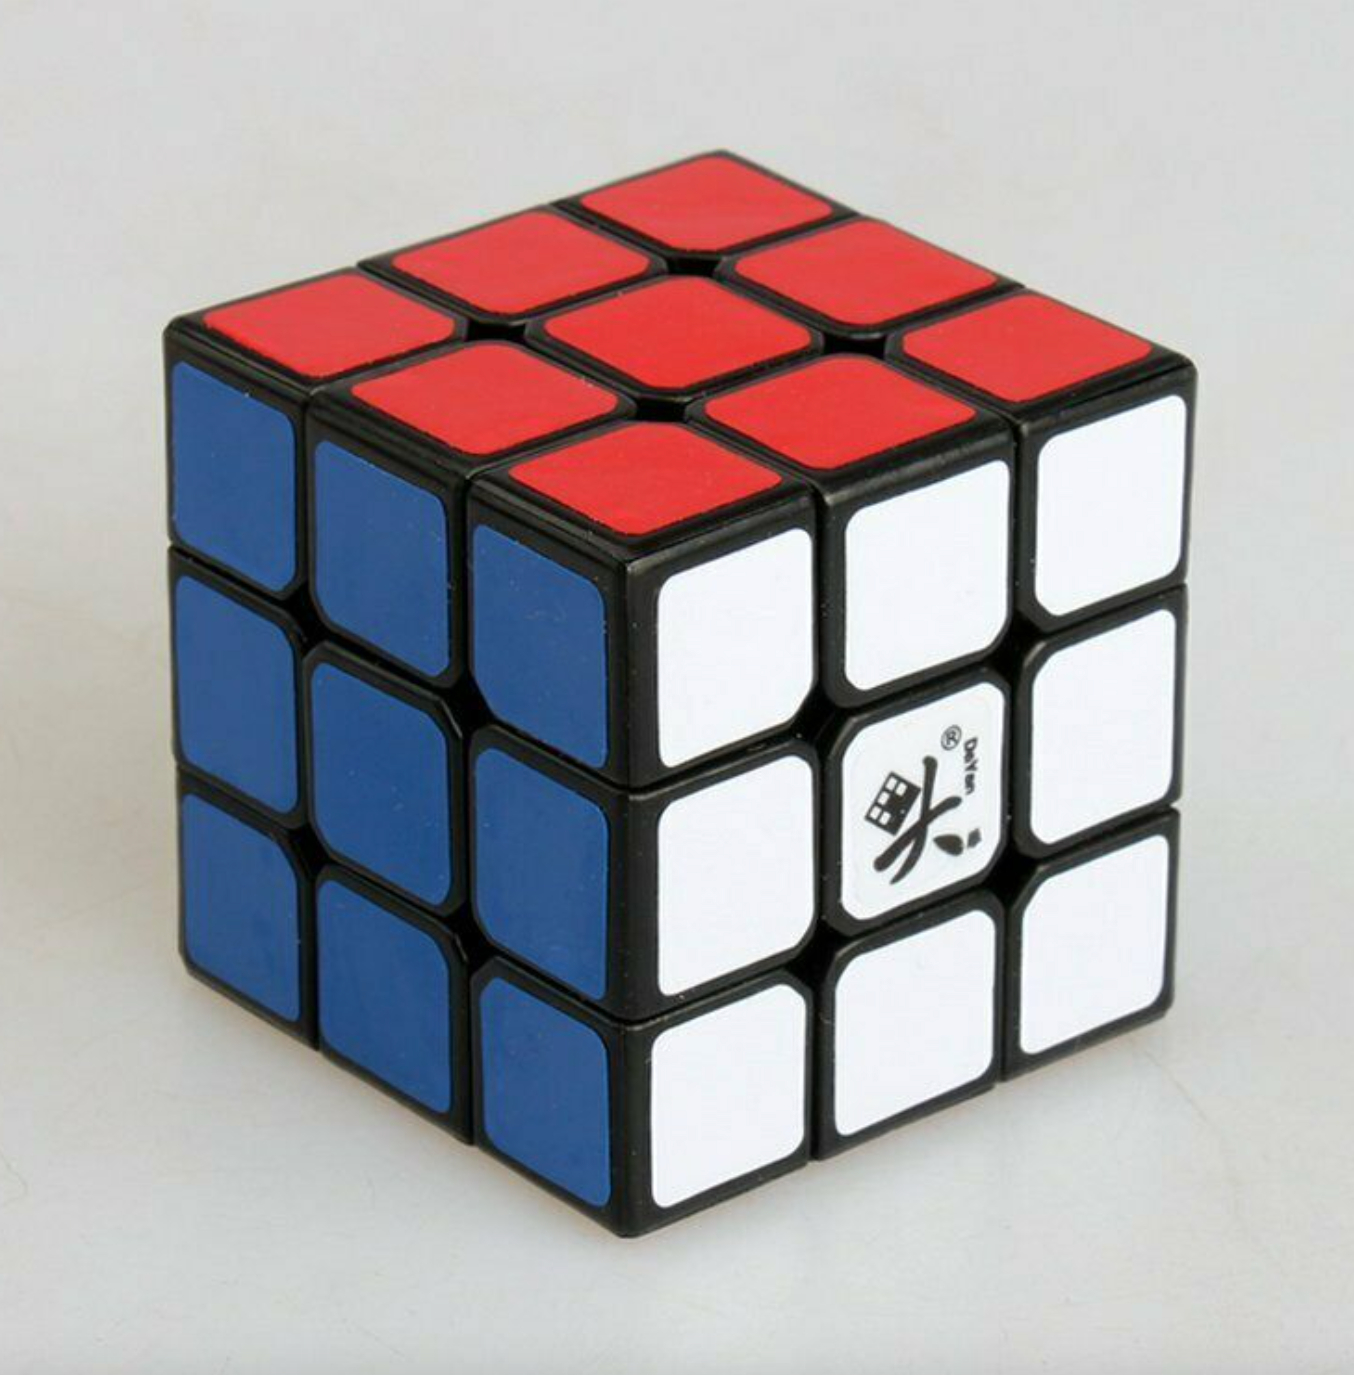 The Dayan ZhanChi Rubik's Cube